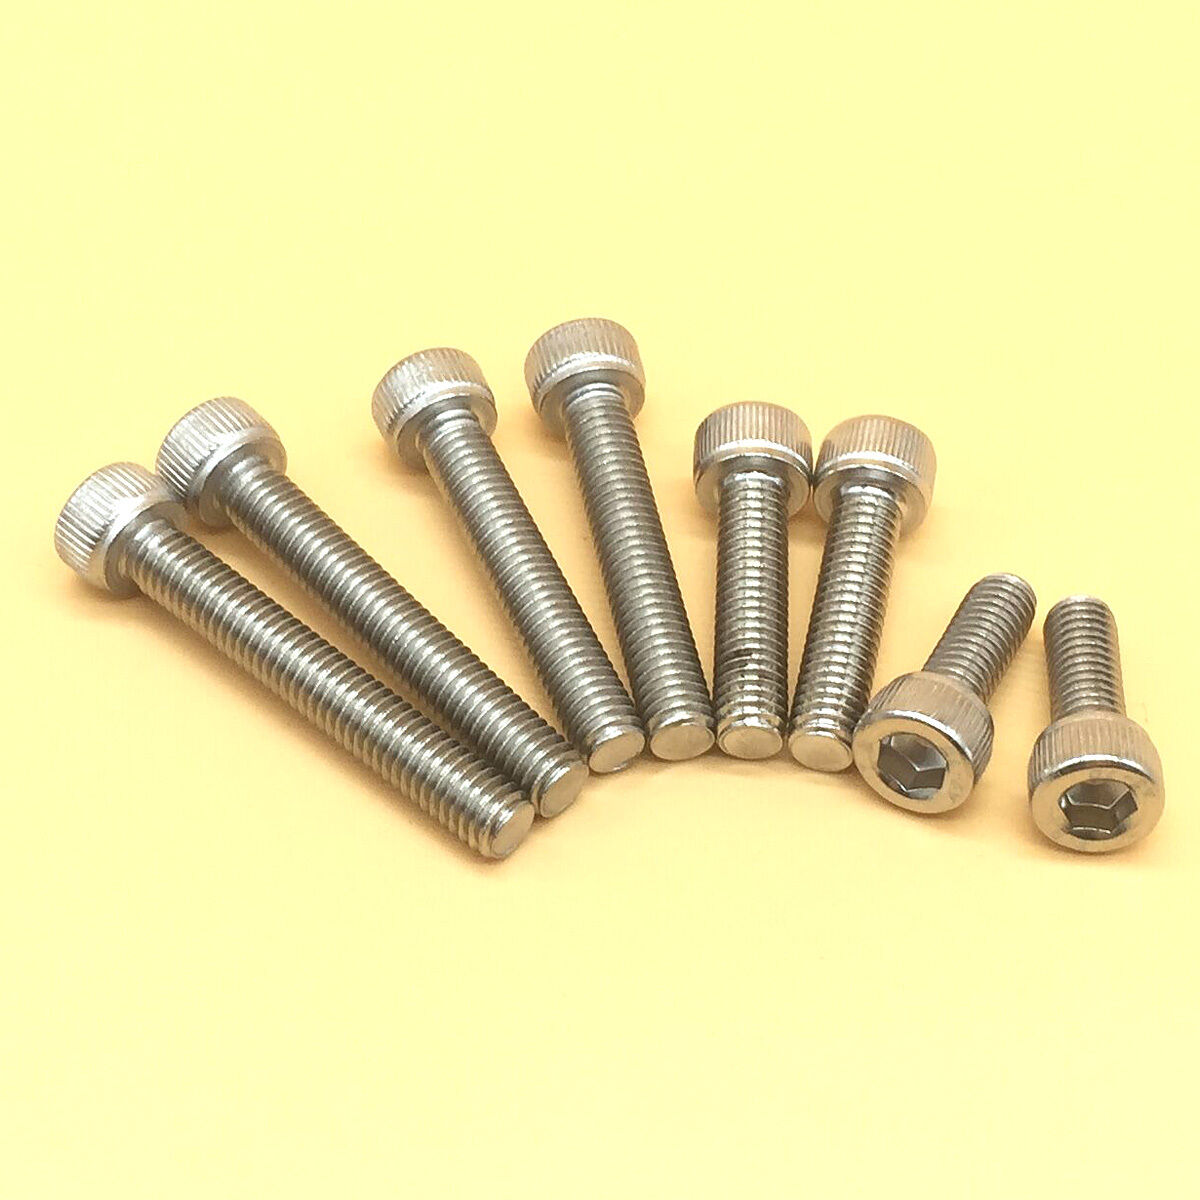 Stainless Steel 4-40 to 1/4"-20 Allen Hex Socket Head Cap Screws Assortment Kit